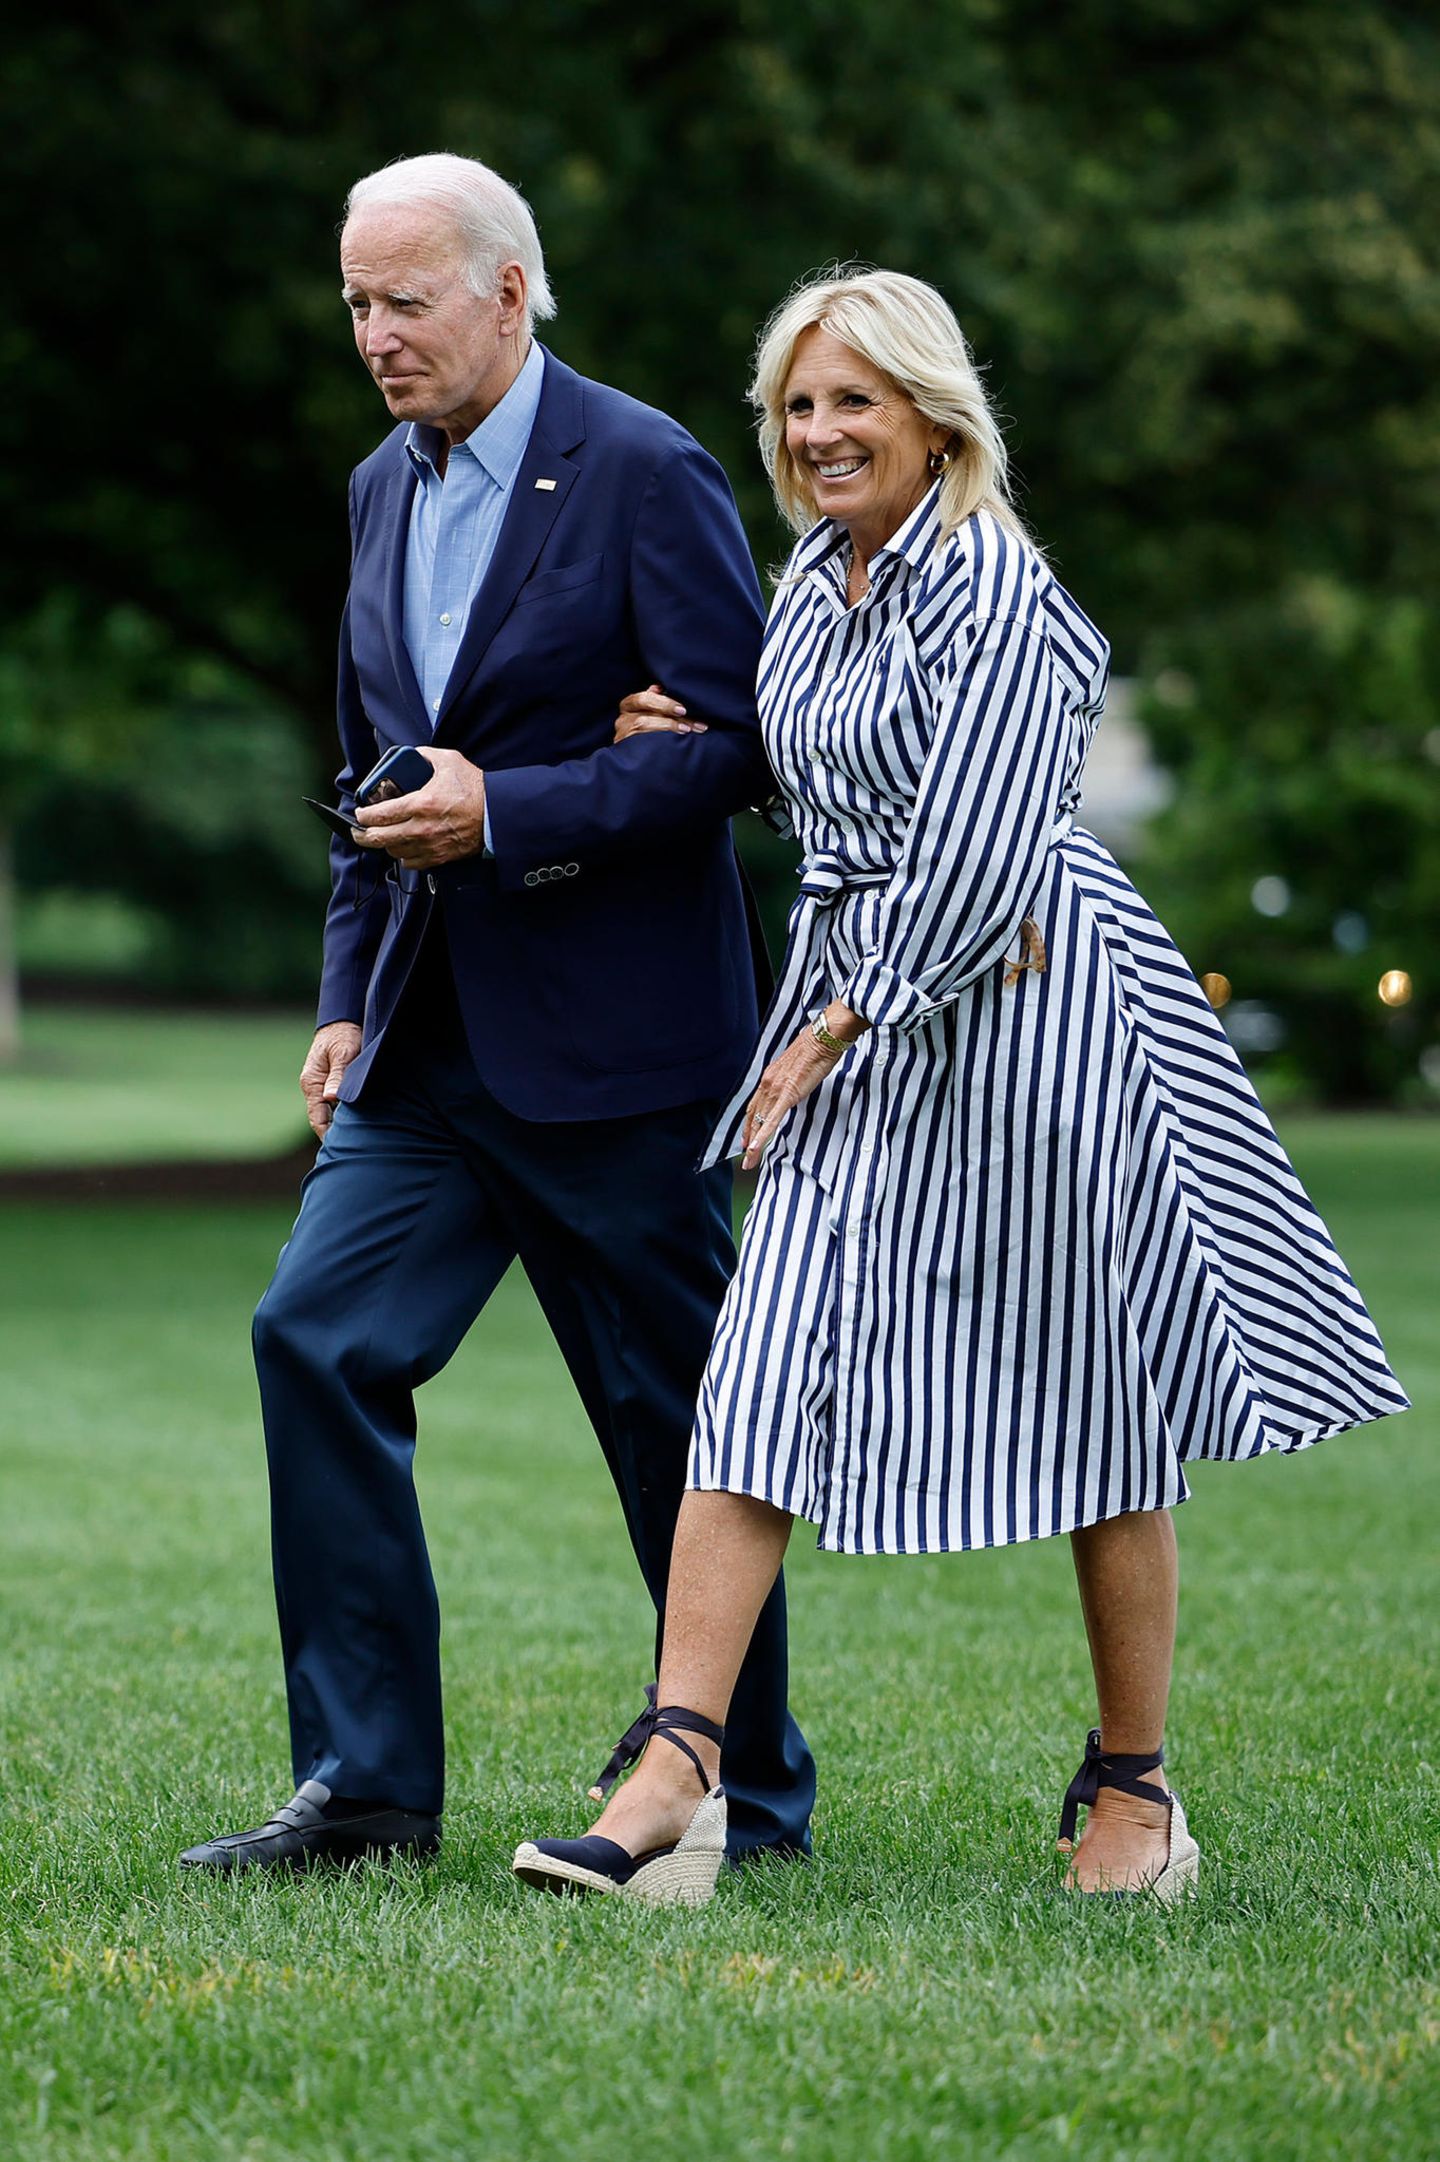 Diese Frau weiß, wie es geht: Jill Biden verbindet Glamour und Sommer in ihrem Look, trägt ein blau-weiß gestreiftes Hemdblusenkleid. Ihre Espadrilles mit Absatz sind um ihre Knöchel gebunden und vervollständigen den Freizeit-Look. 